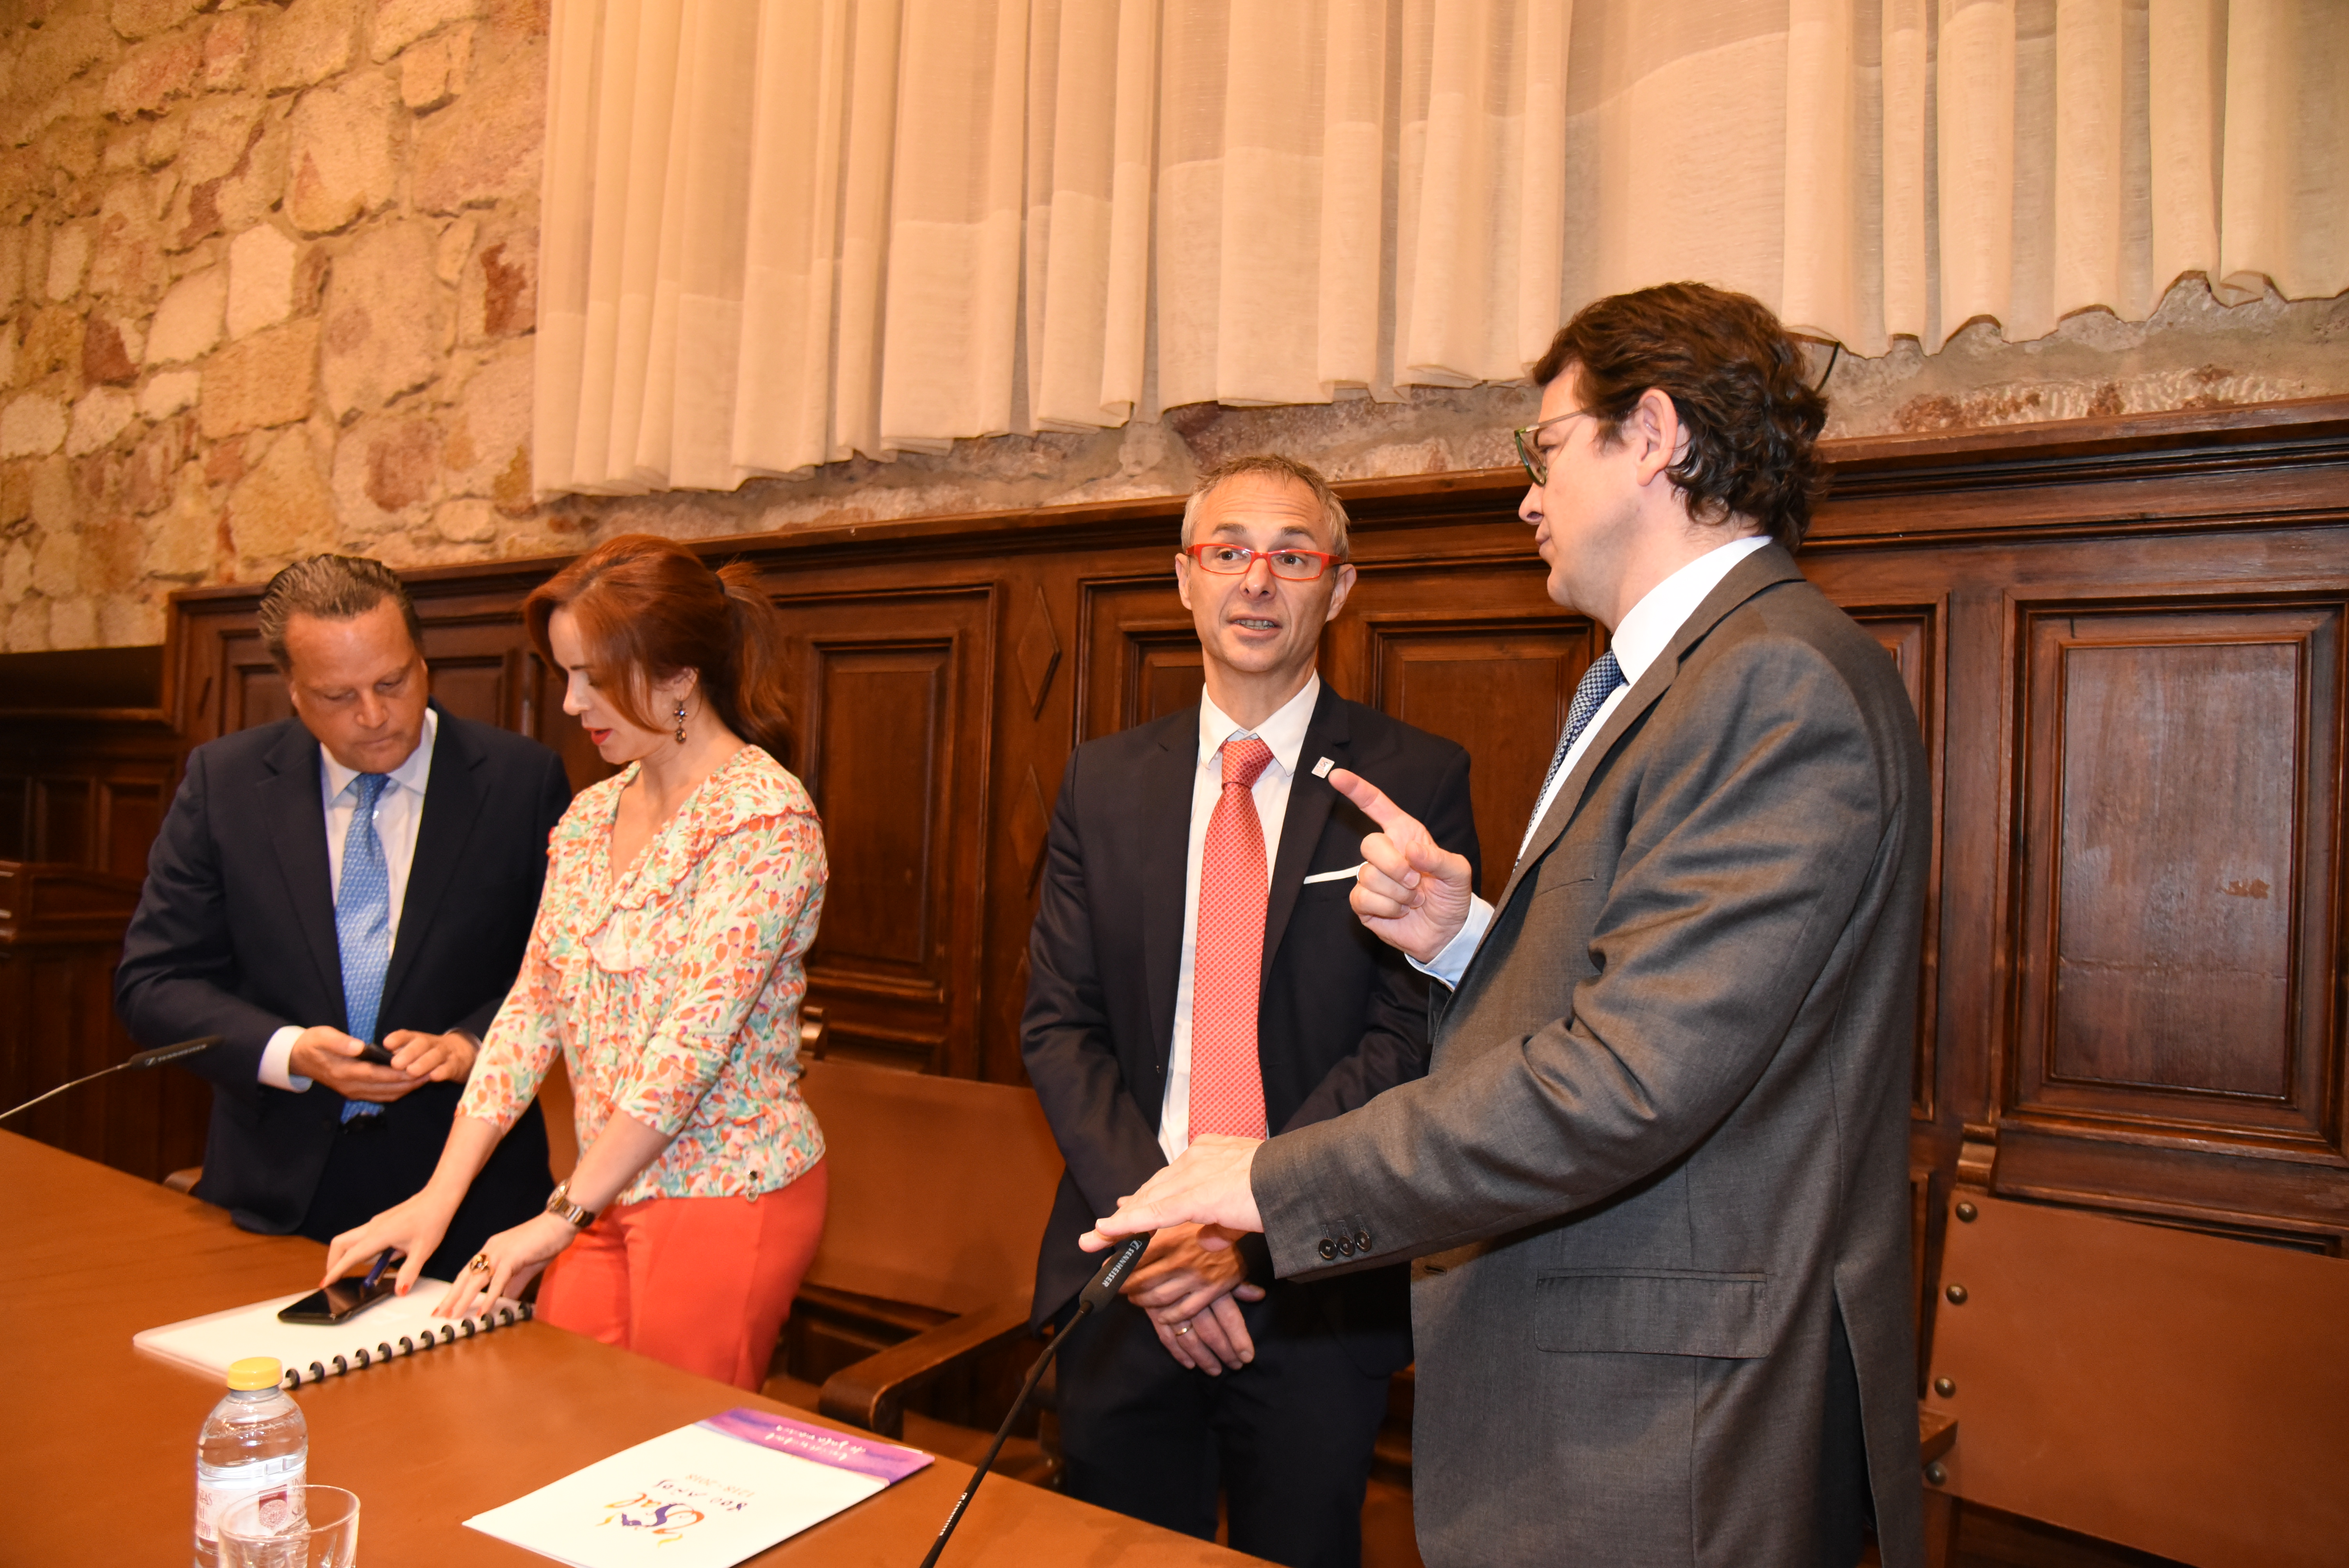 La Universidad de Salamanca acoge la celebración del XV aniversario del Consejo Consultivo de Castilla y León con motivo del VIII Centenario 